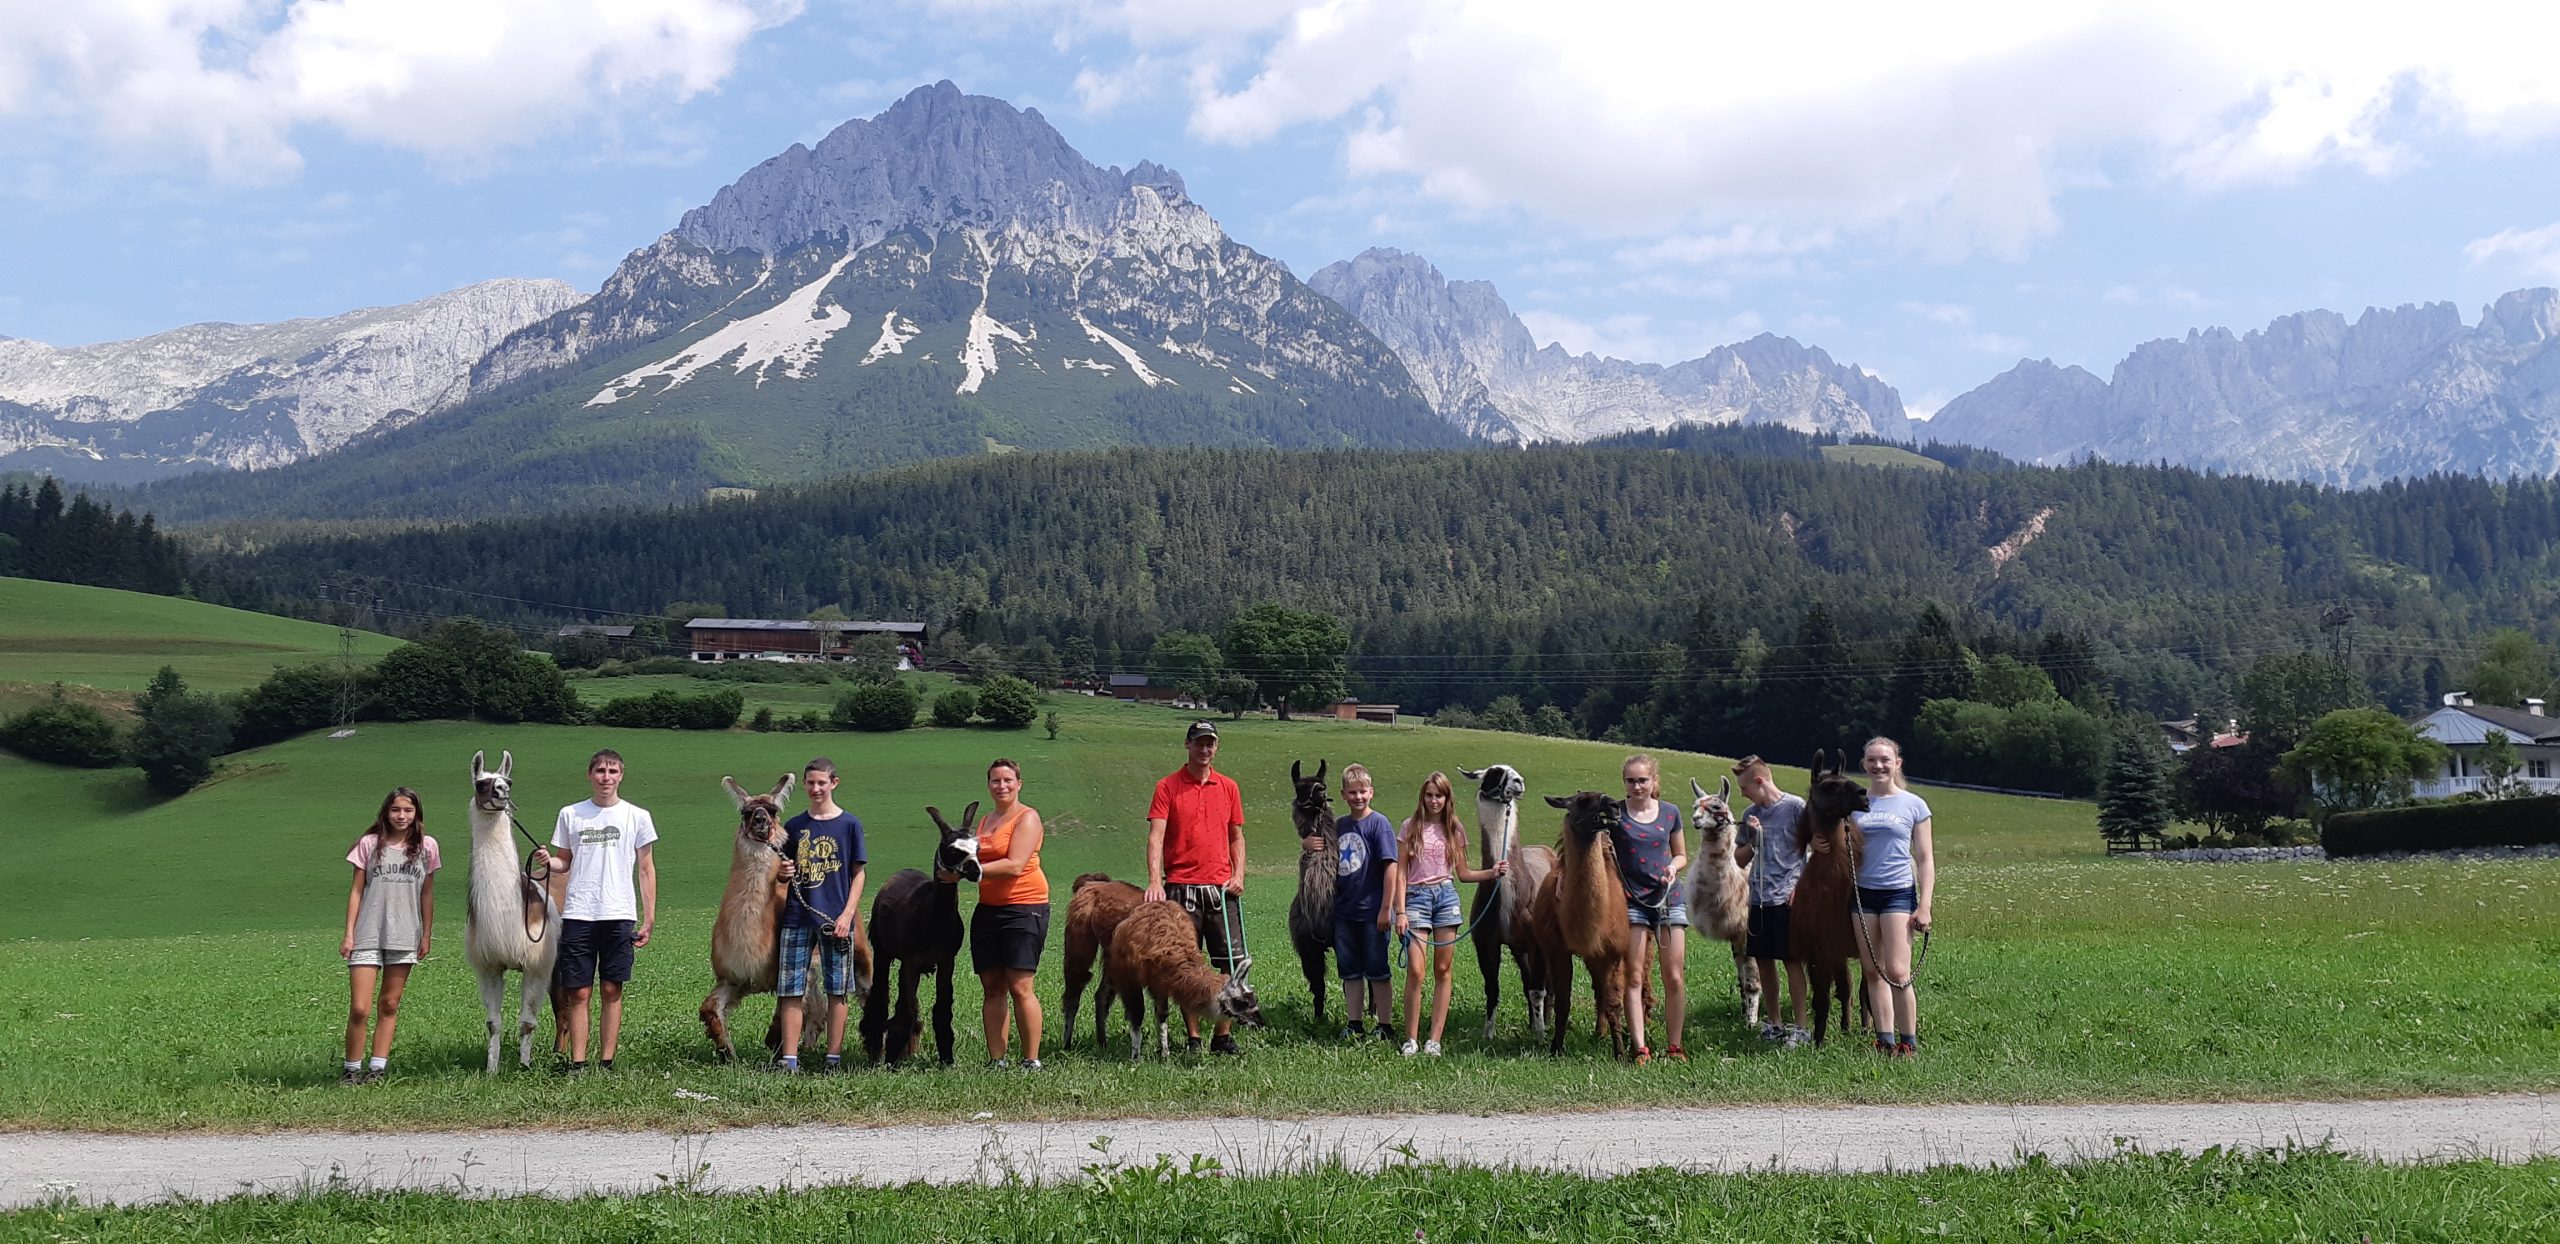 Viel Action bei der Ferienfreizeit im Berchtesgadener Land